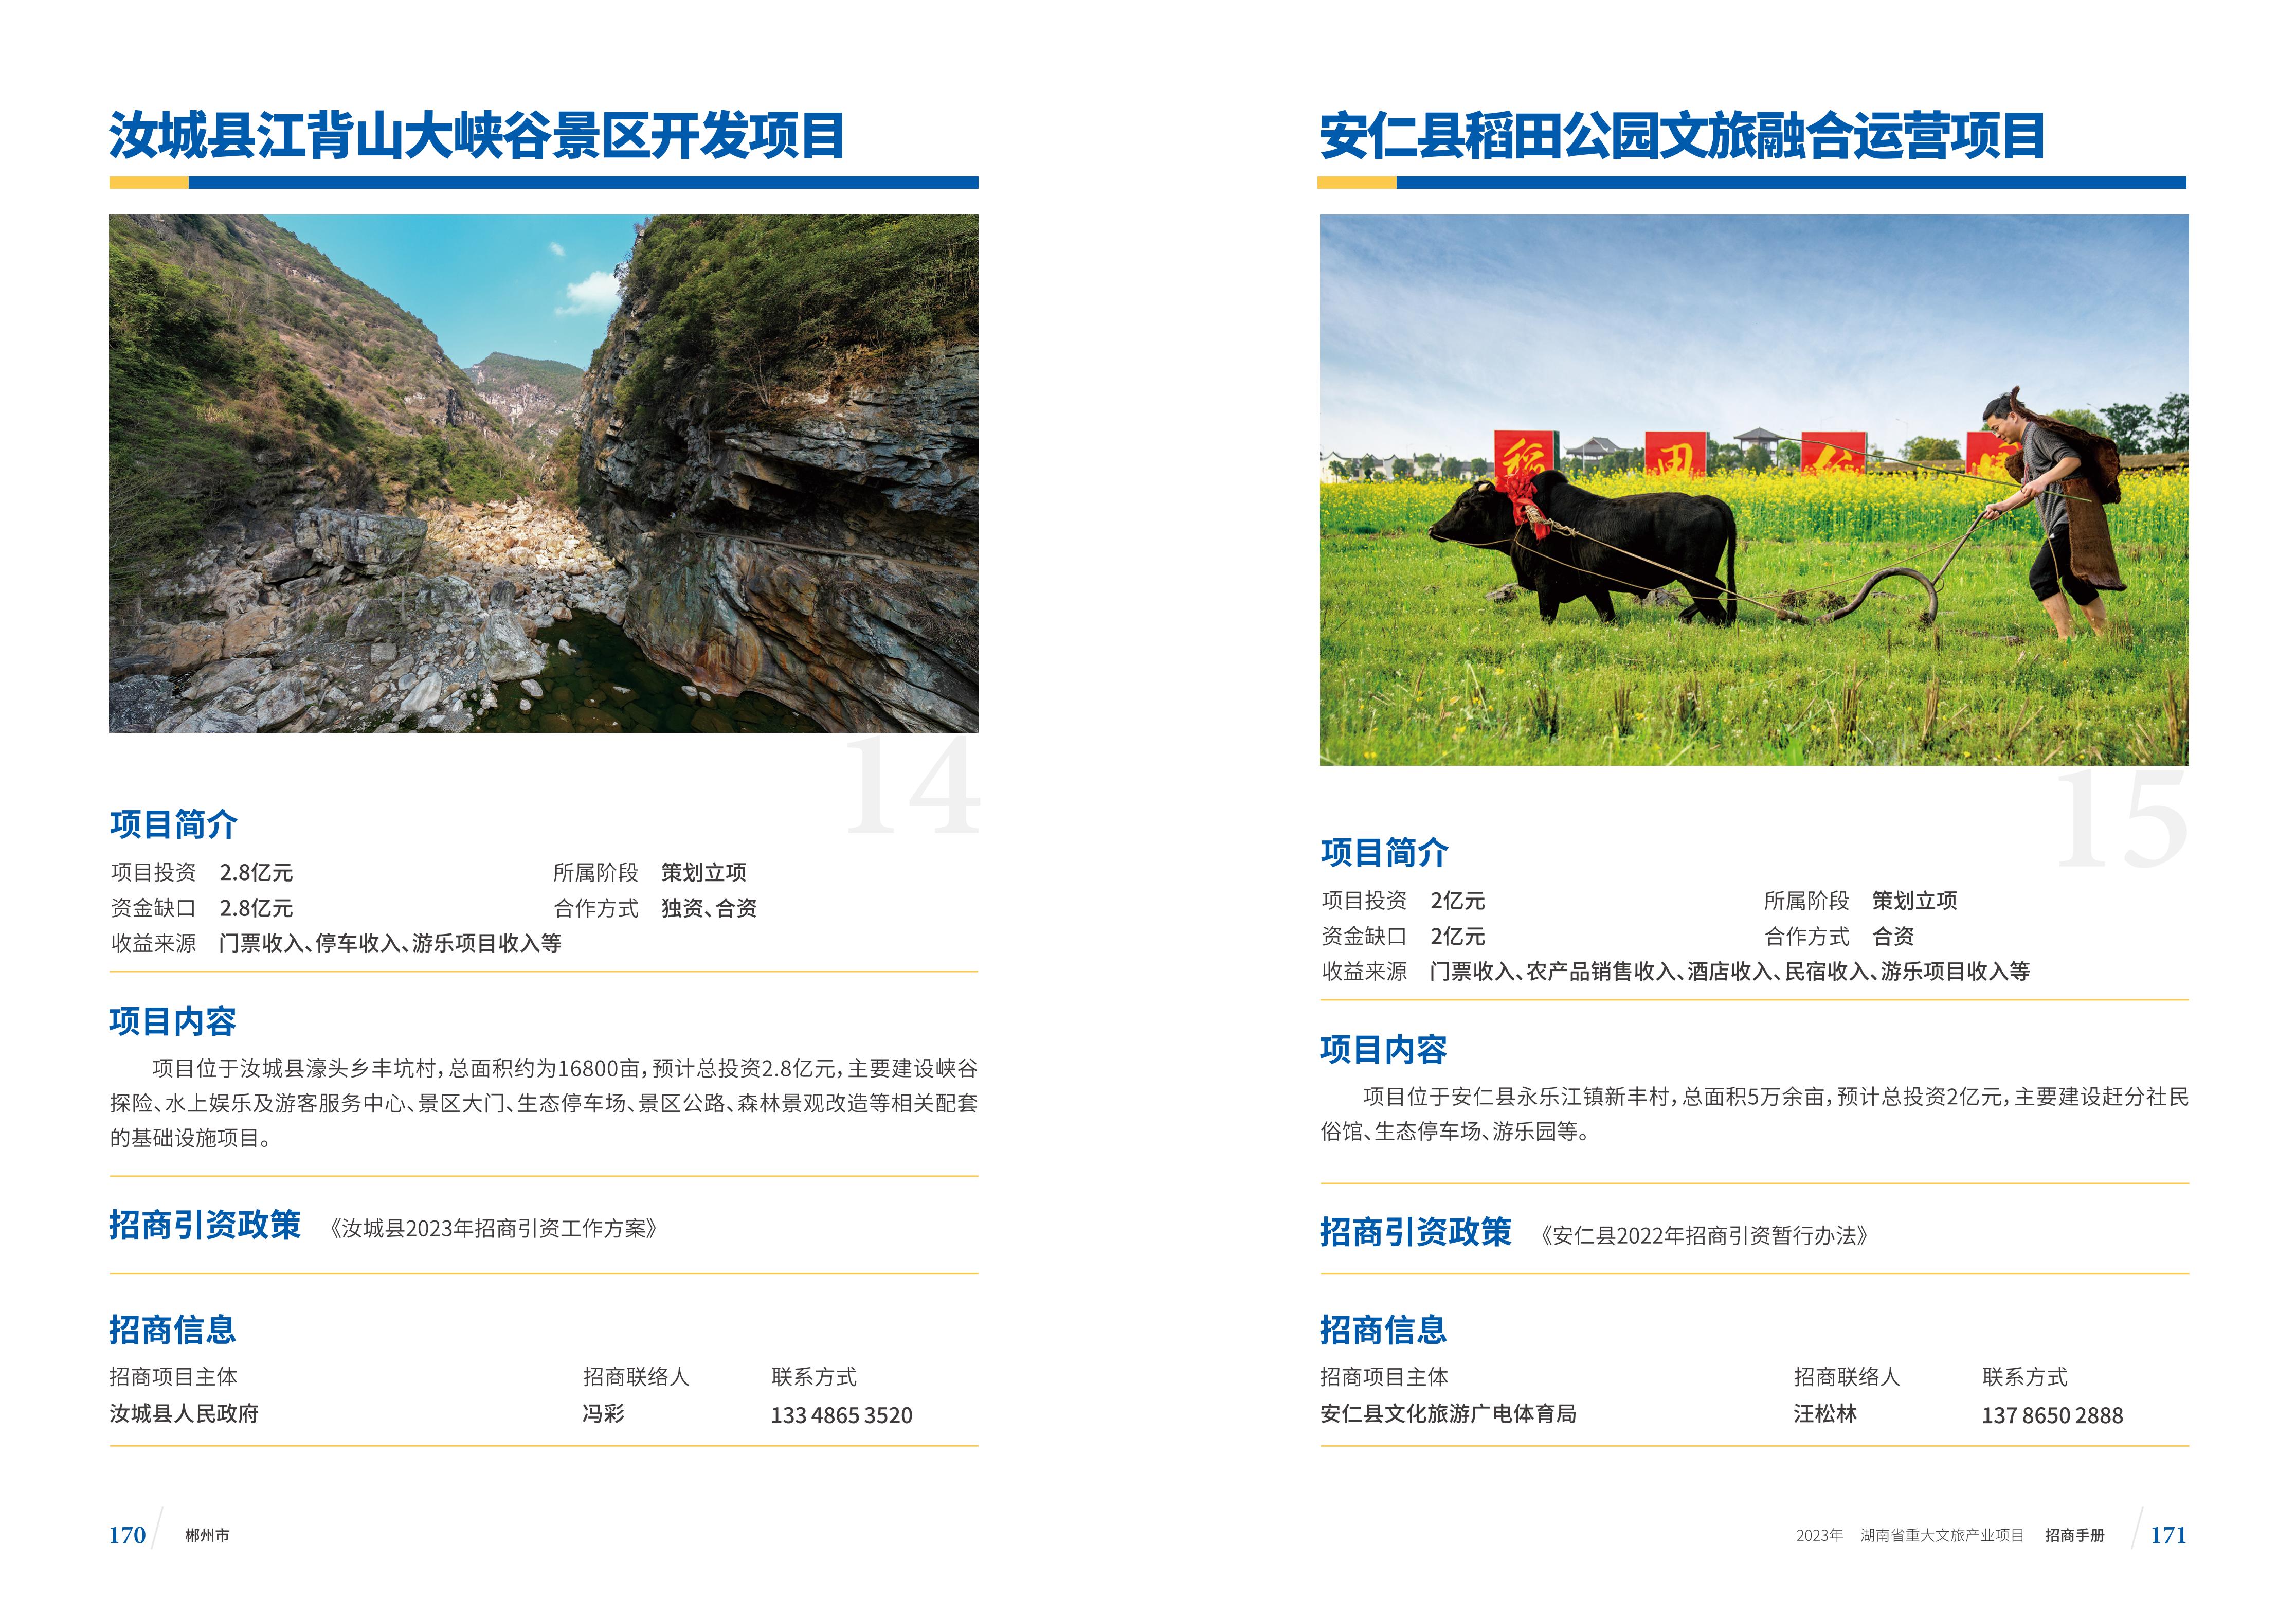 湖南省重大文旅产业项目招手册线上链接版_93.jpg